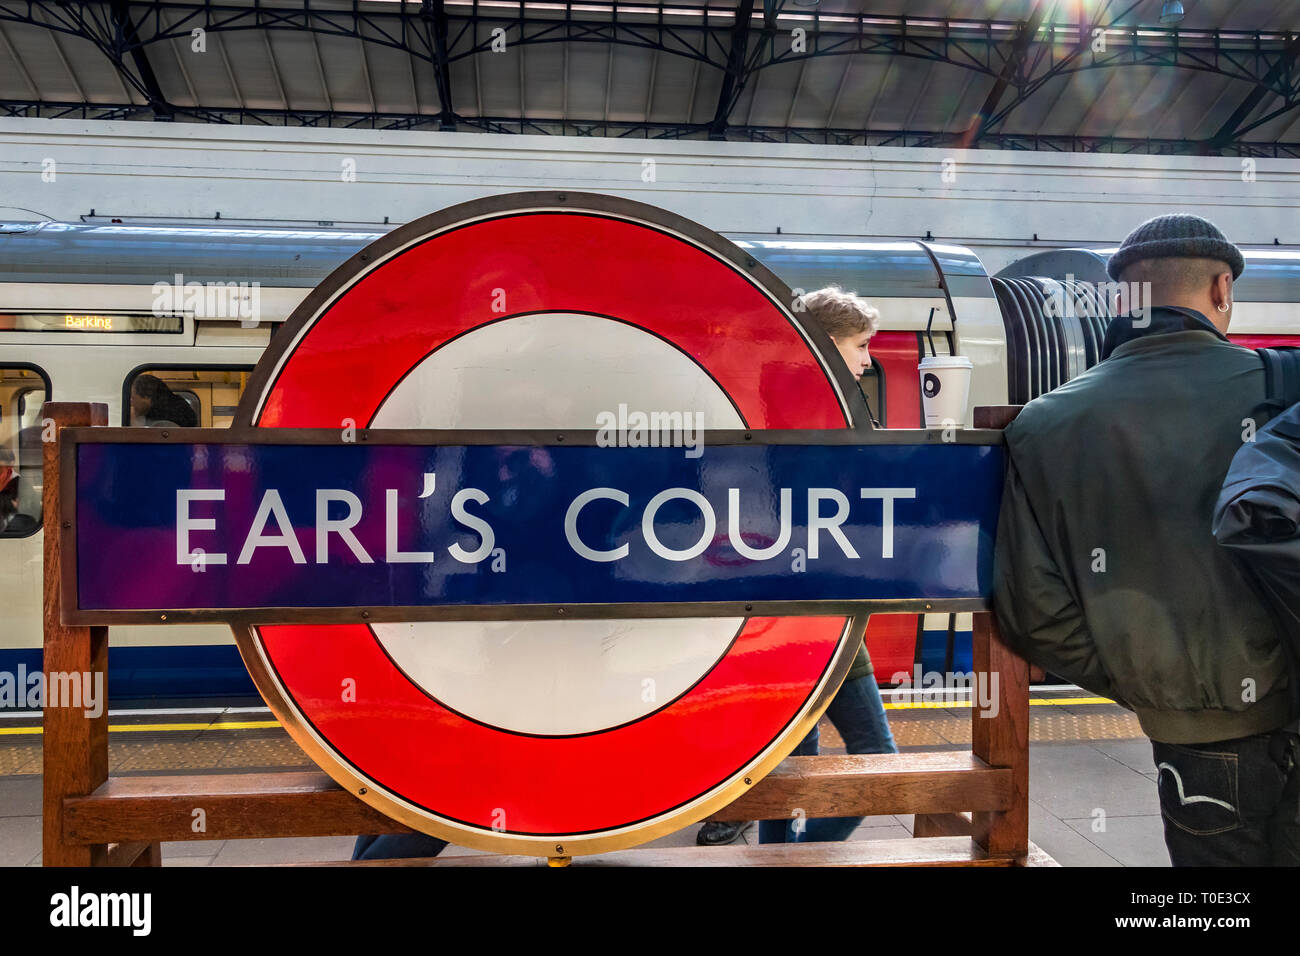 Un homme se penche contre le panneau rond de la station sur la plate-forme de la station de métro Earls court, Londres, Royaume-Uni Banque D'Images